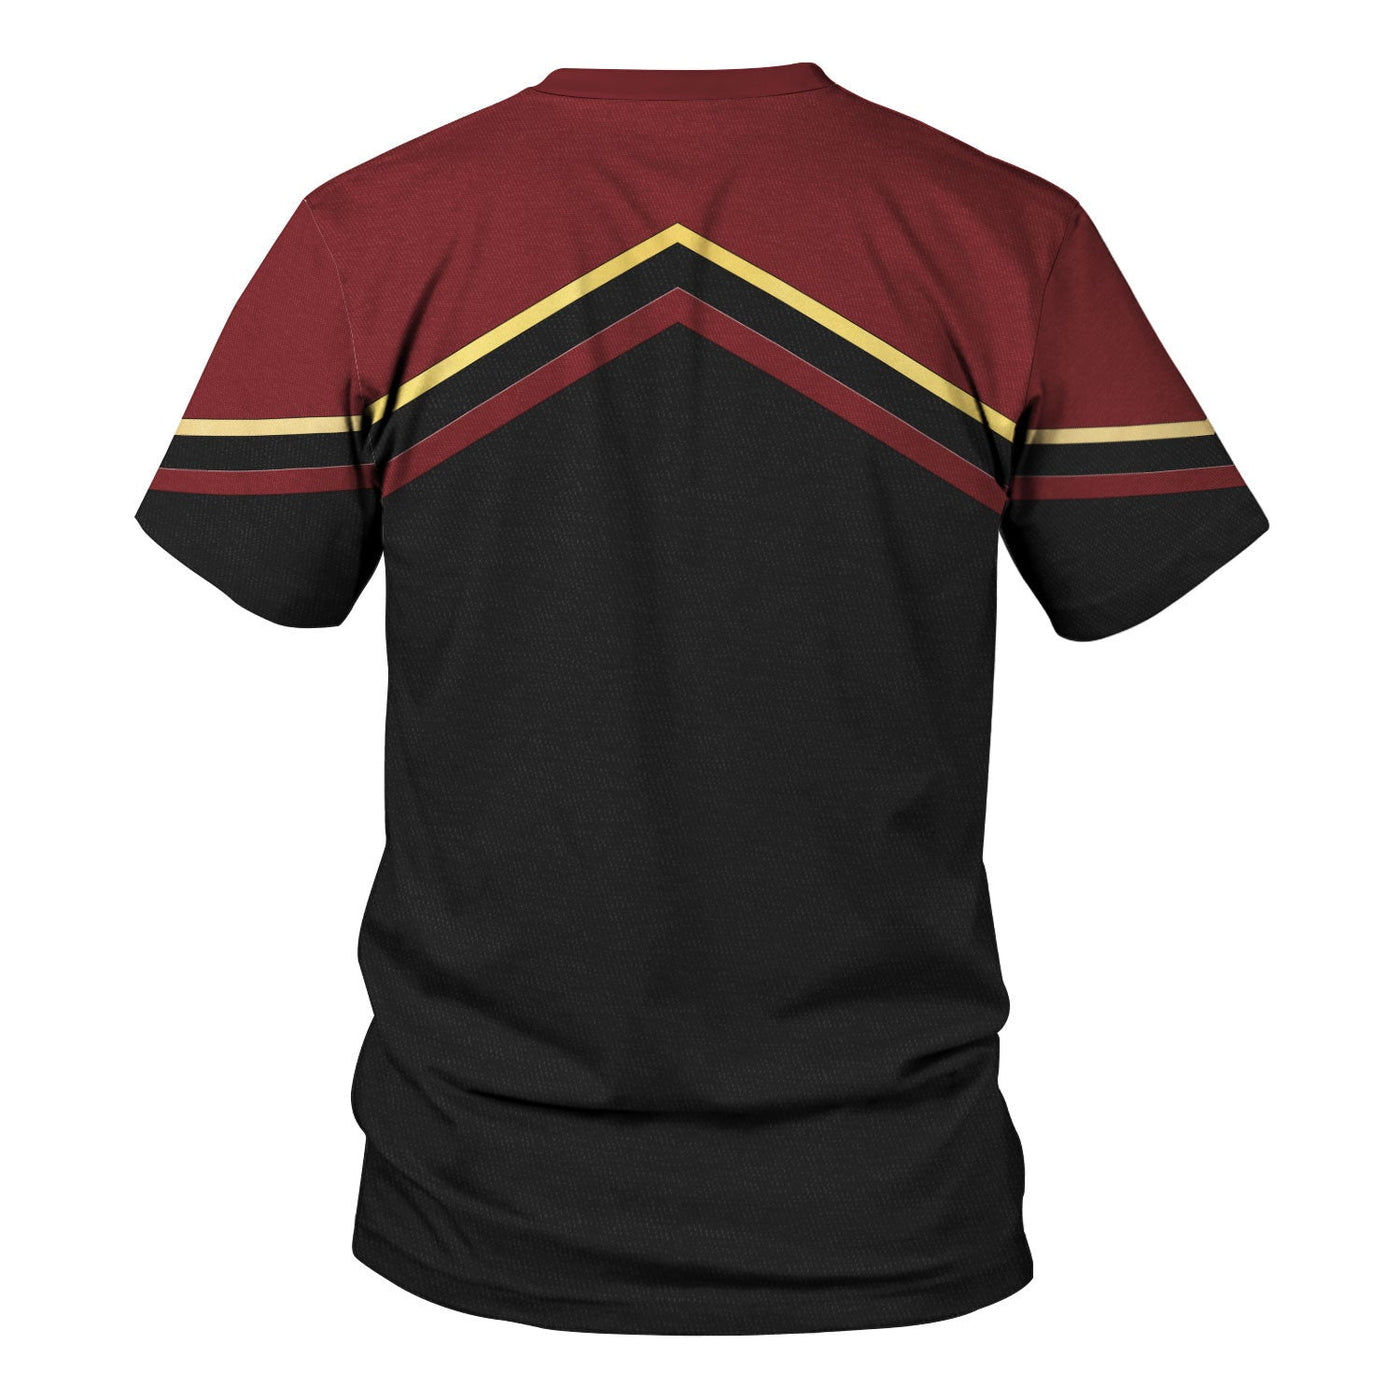 Star Trek Starfleet Uniform Circa Cool - Unisex 3D T-shirt